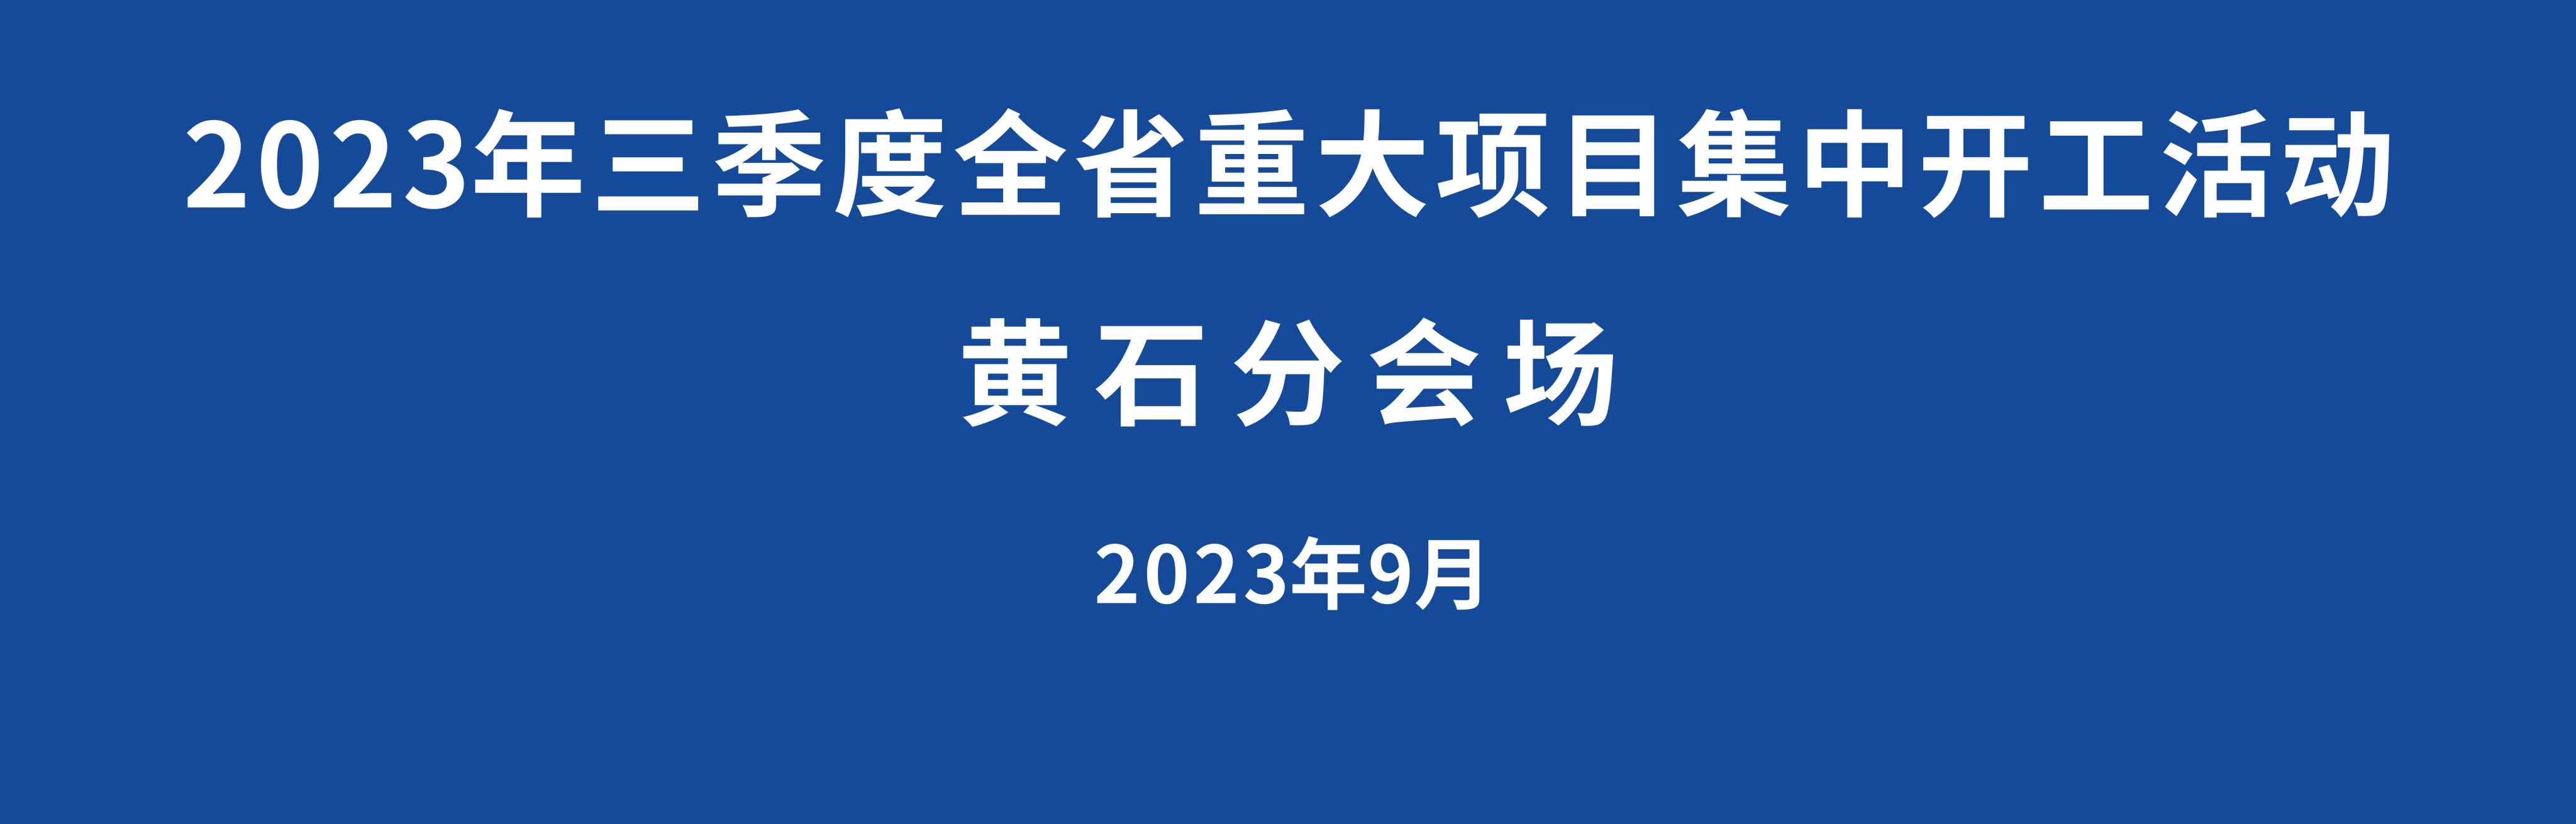 【直播】2023年三季度全省重大项目集中开工活动黄石分会场